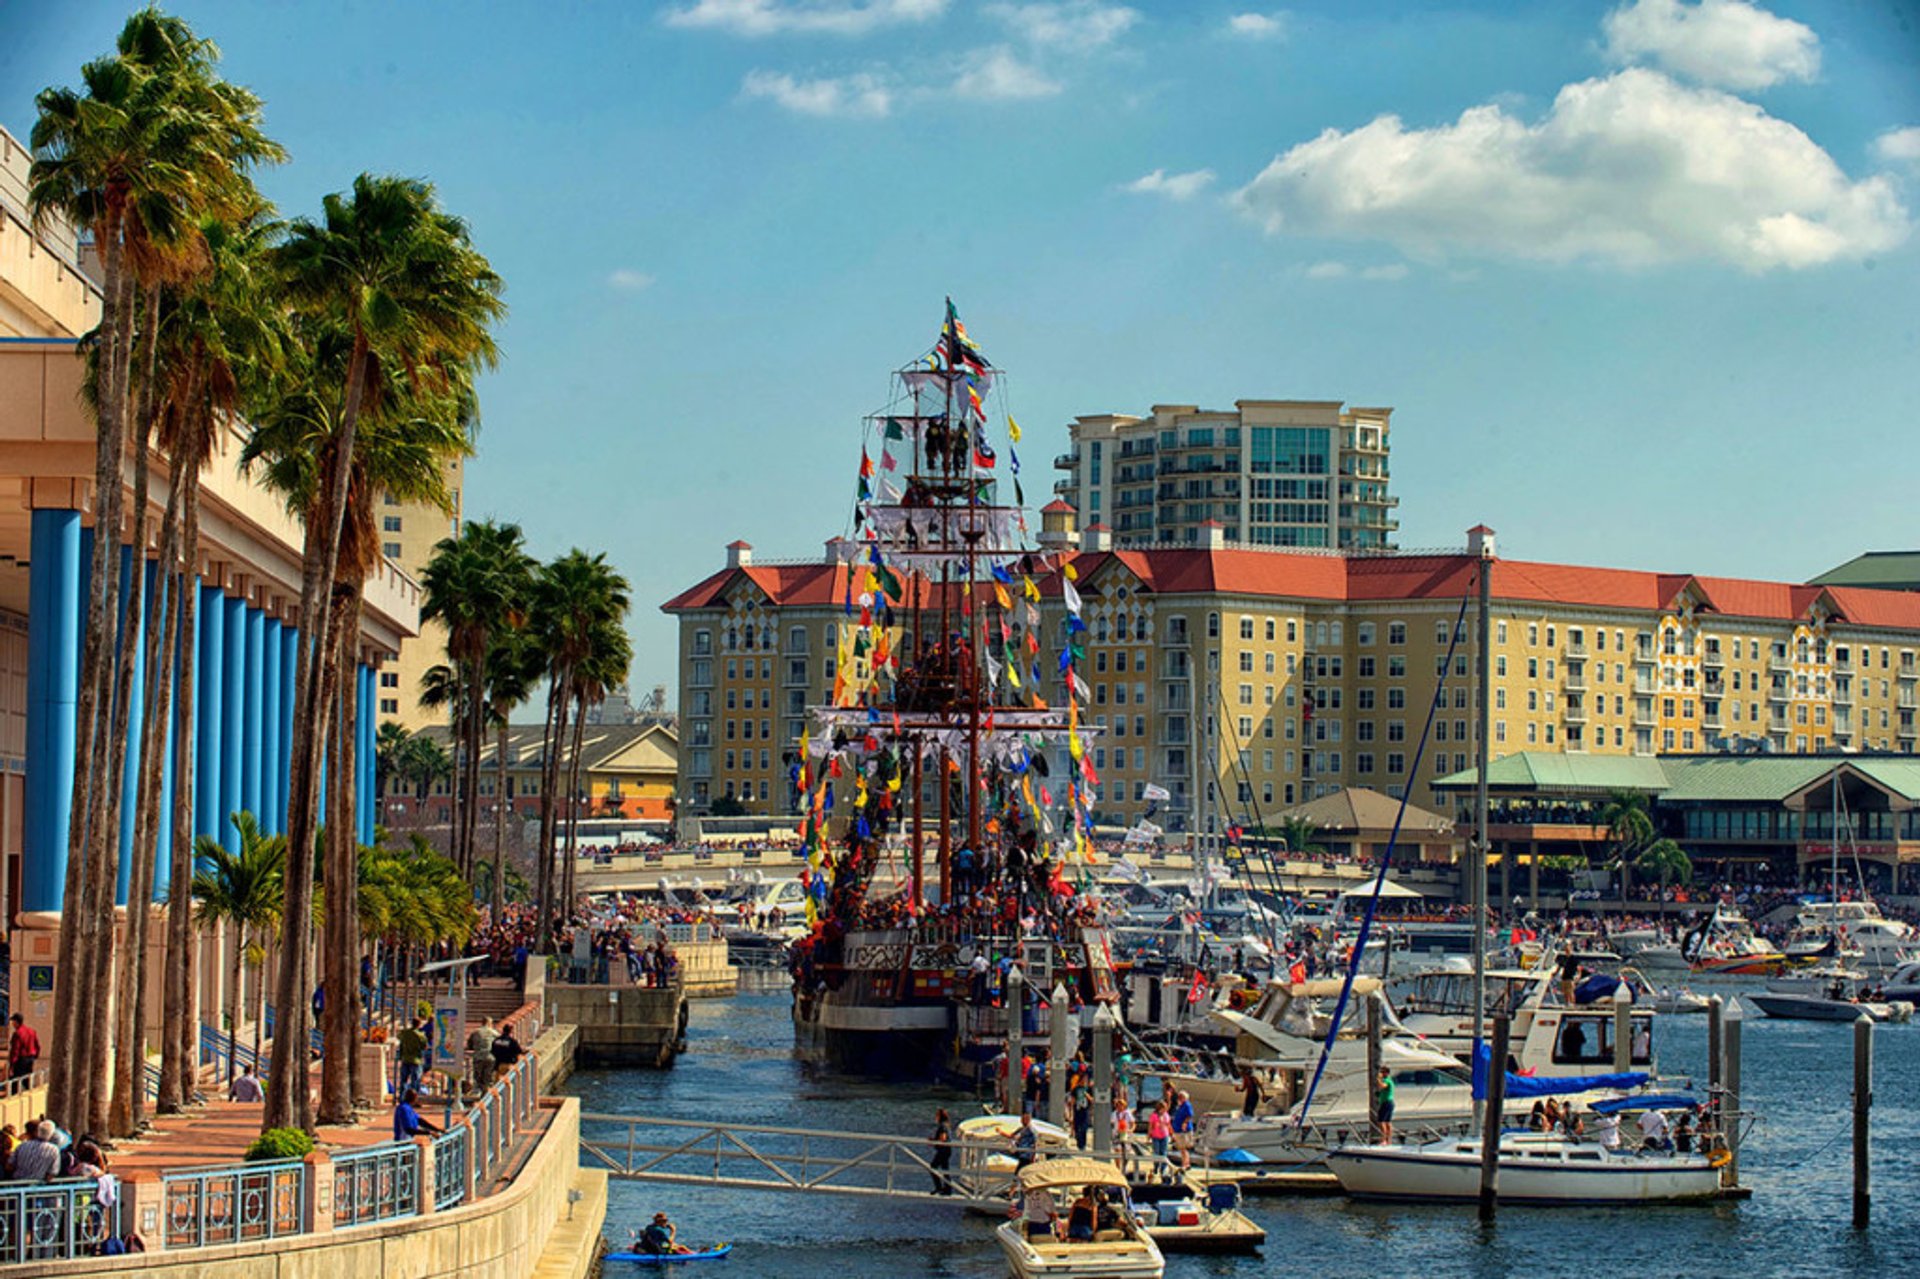 Gasparilla Pirate Fest 2023 in Florida - Dates